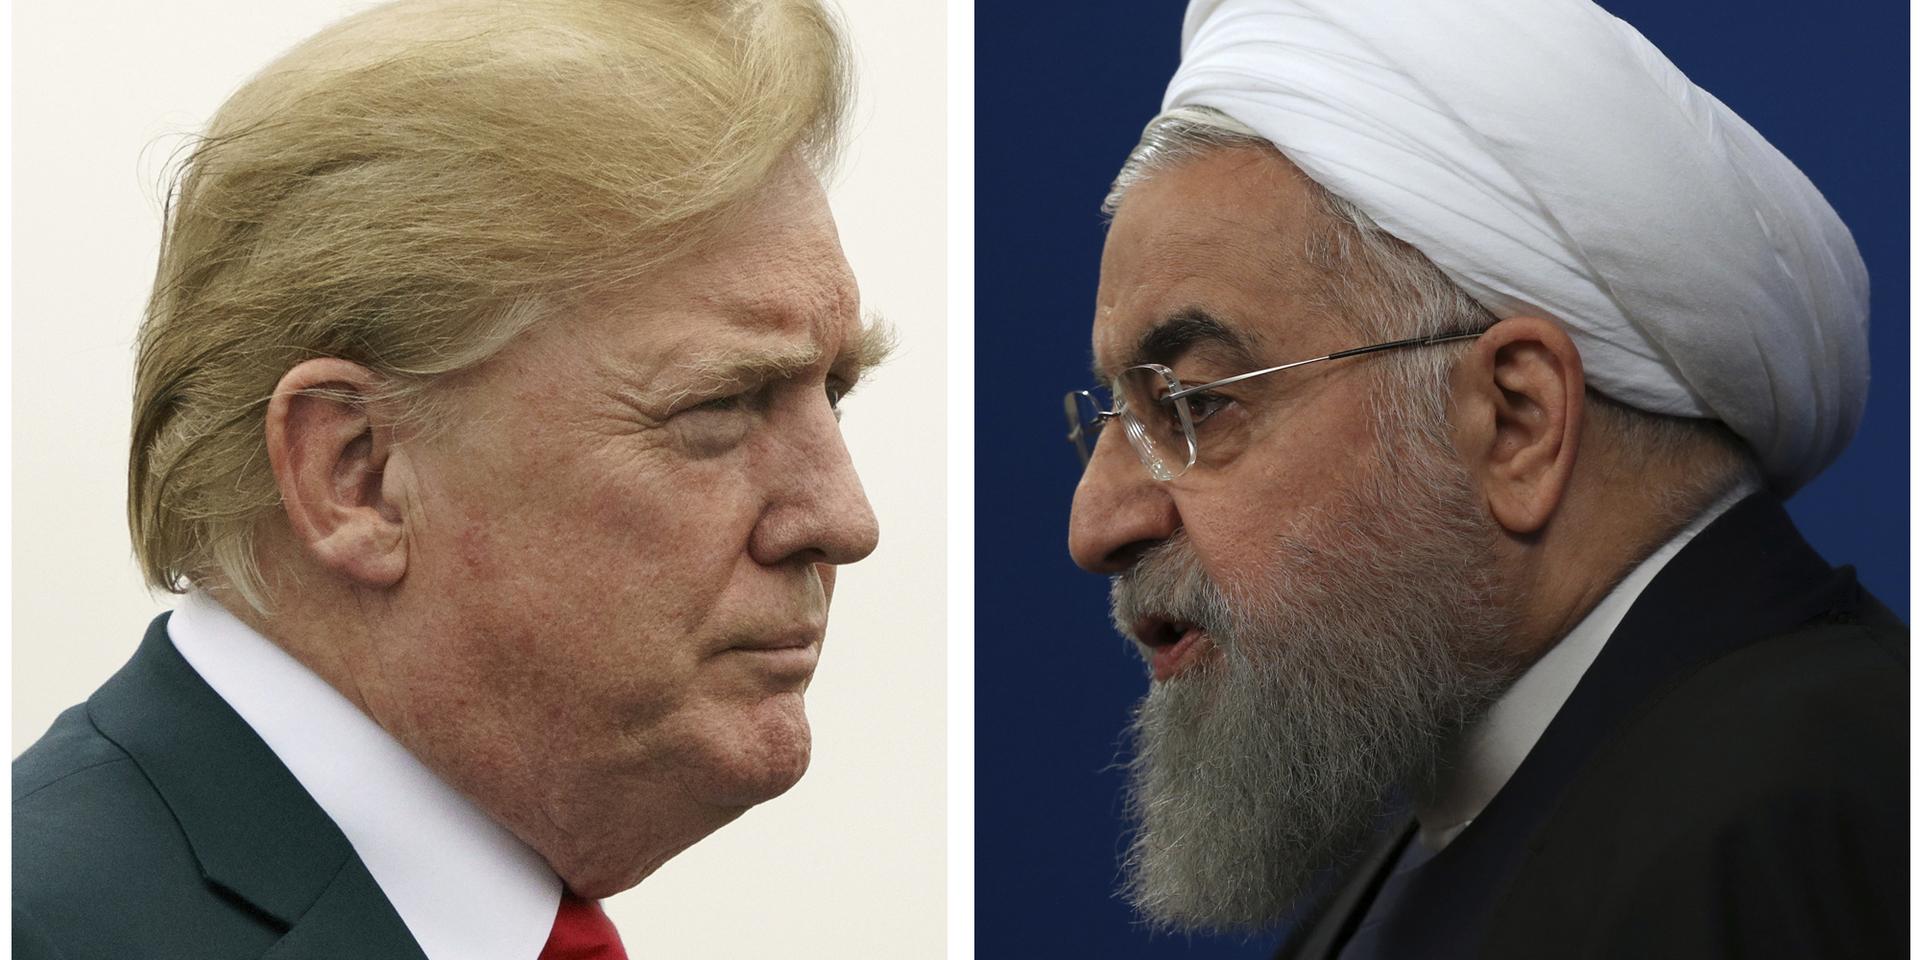 President Donald Trump överväger att lätta på sanktionerna mot Iran för att få till ett möte med Irans ledare Hassan Rouhani, enligt nyhetsbyrån Bloombergs källor. Arkivbild.